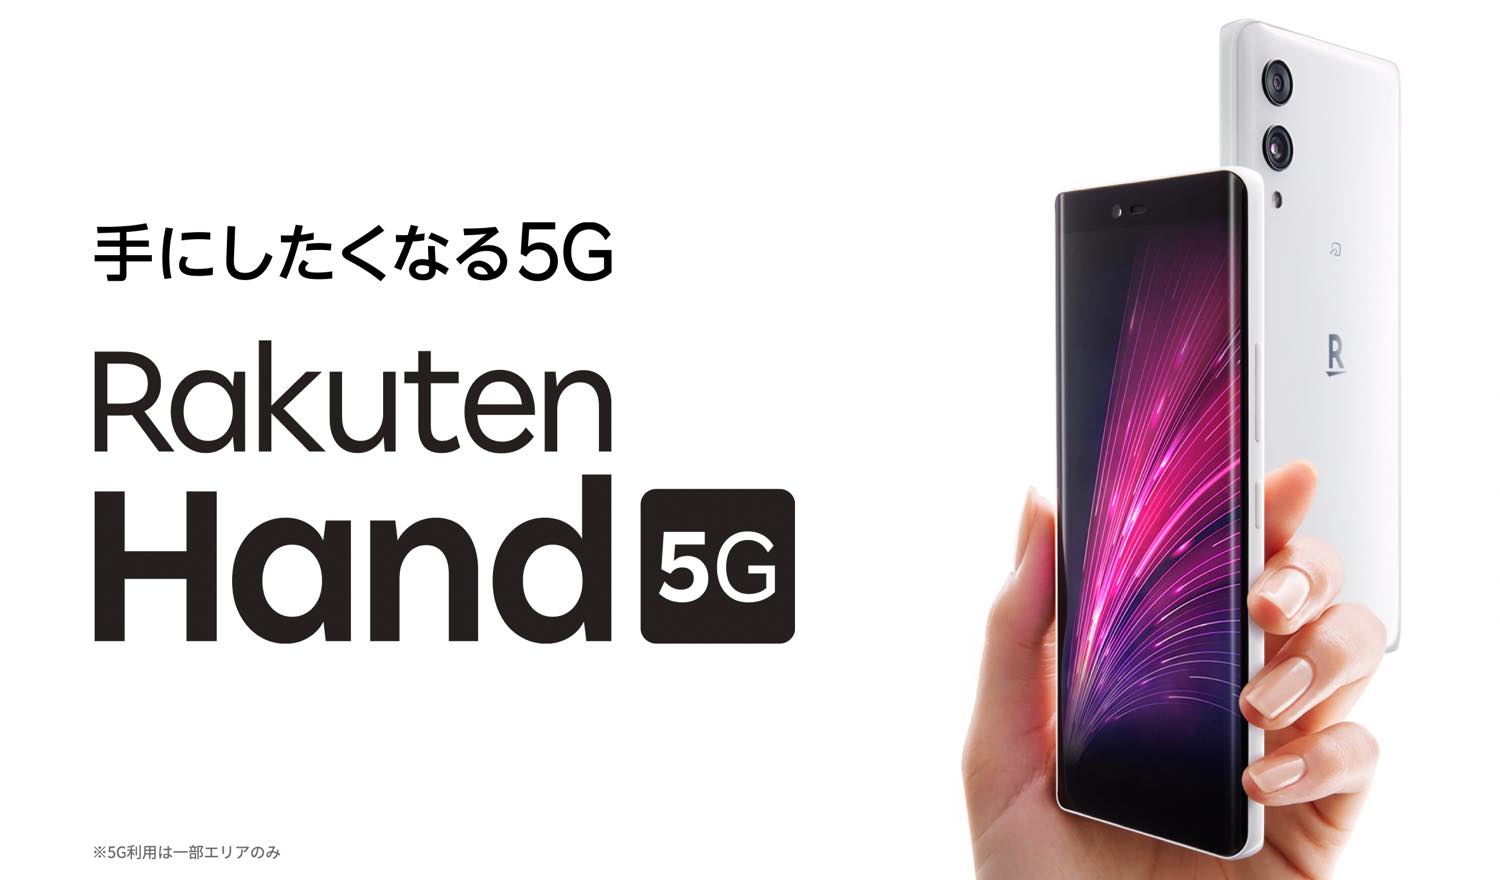 楽天モバイル、｢Rakuten Hand 5G｣を再度値下げ − 実質1円で購入可能に